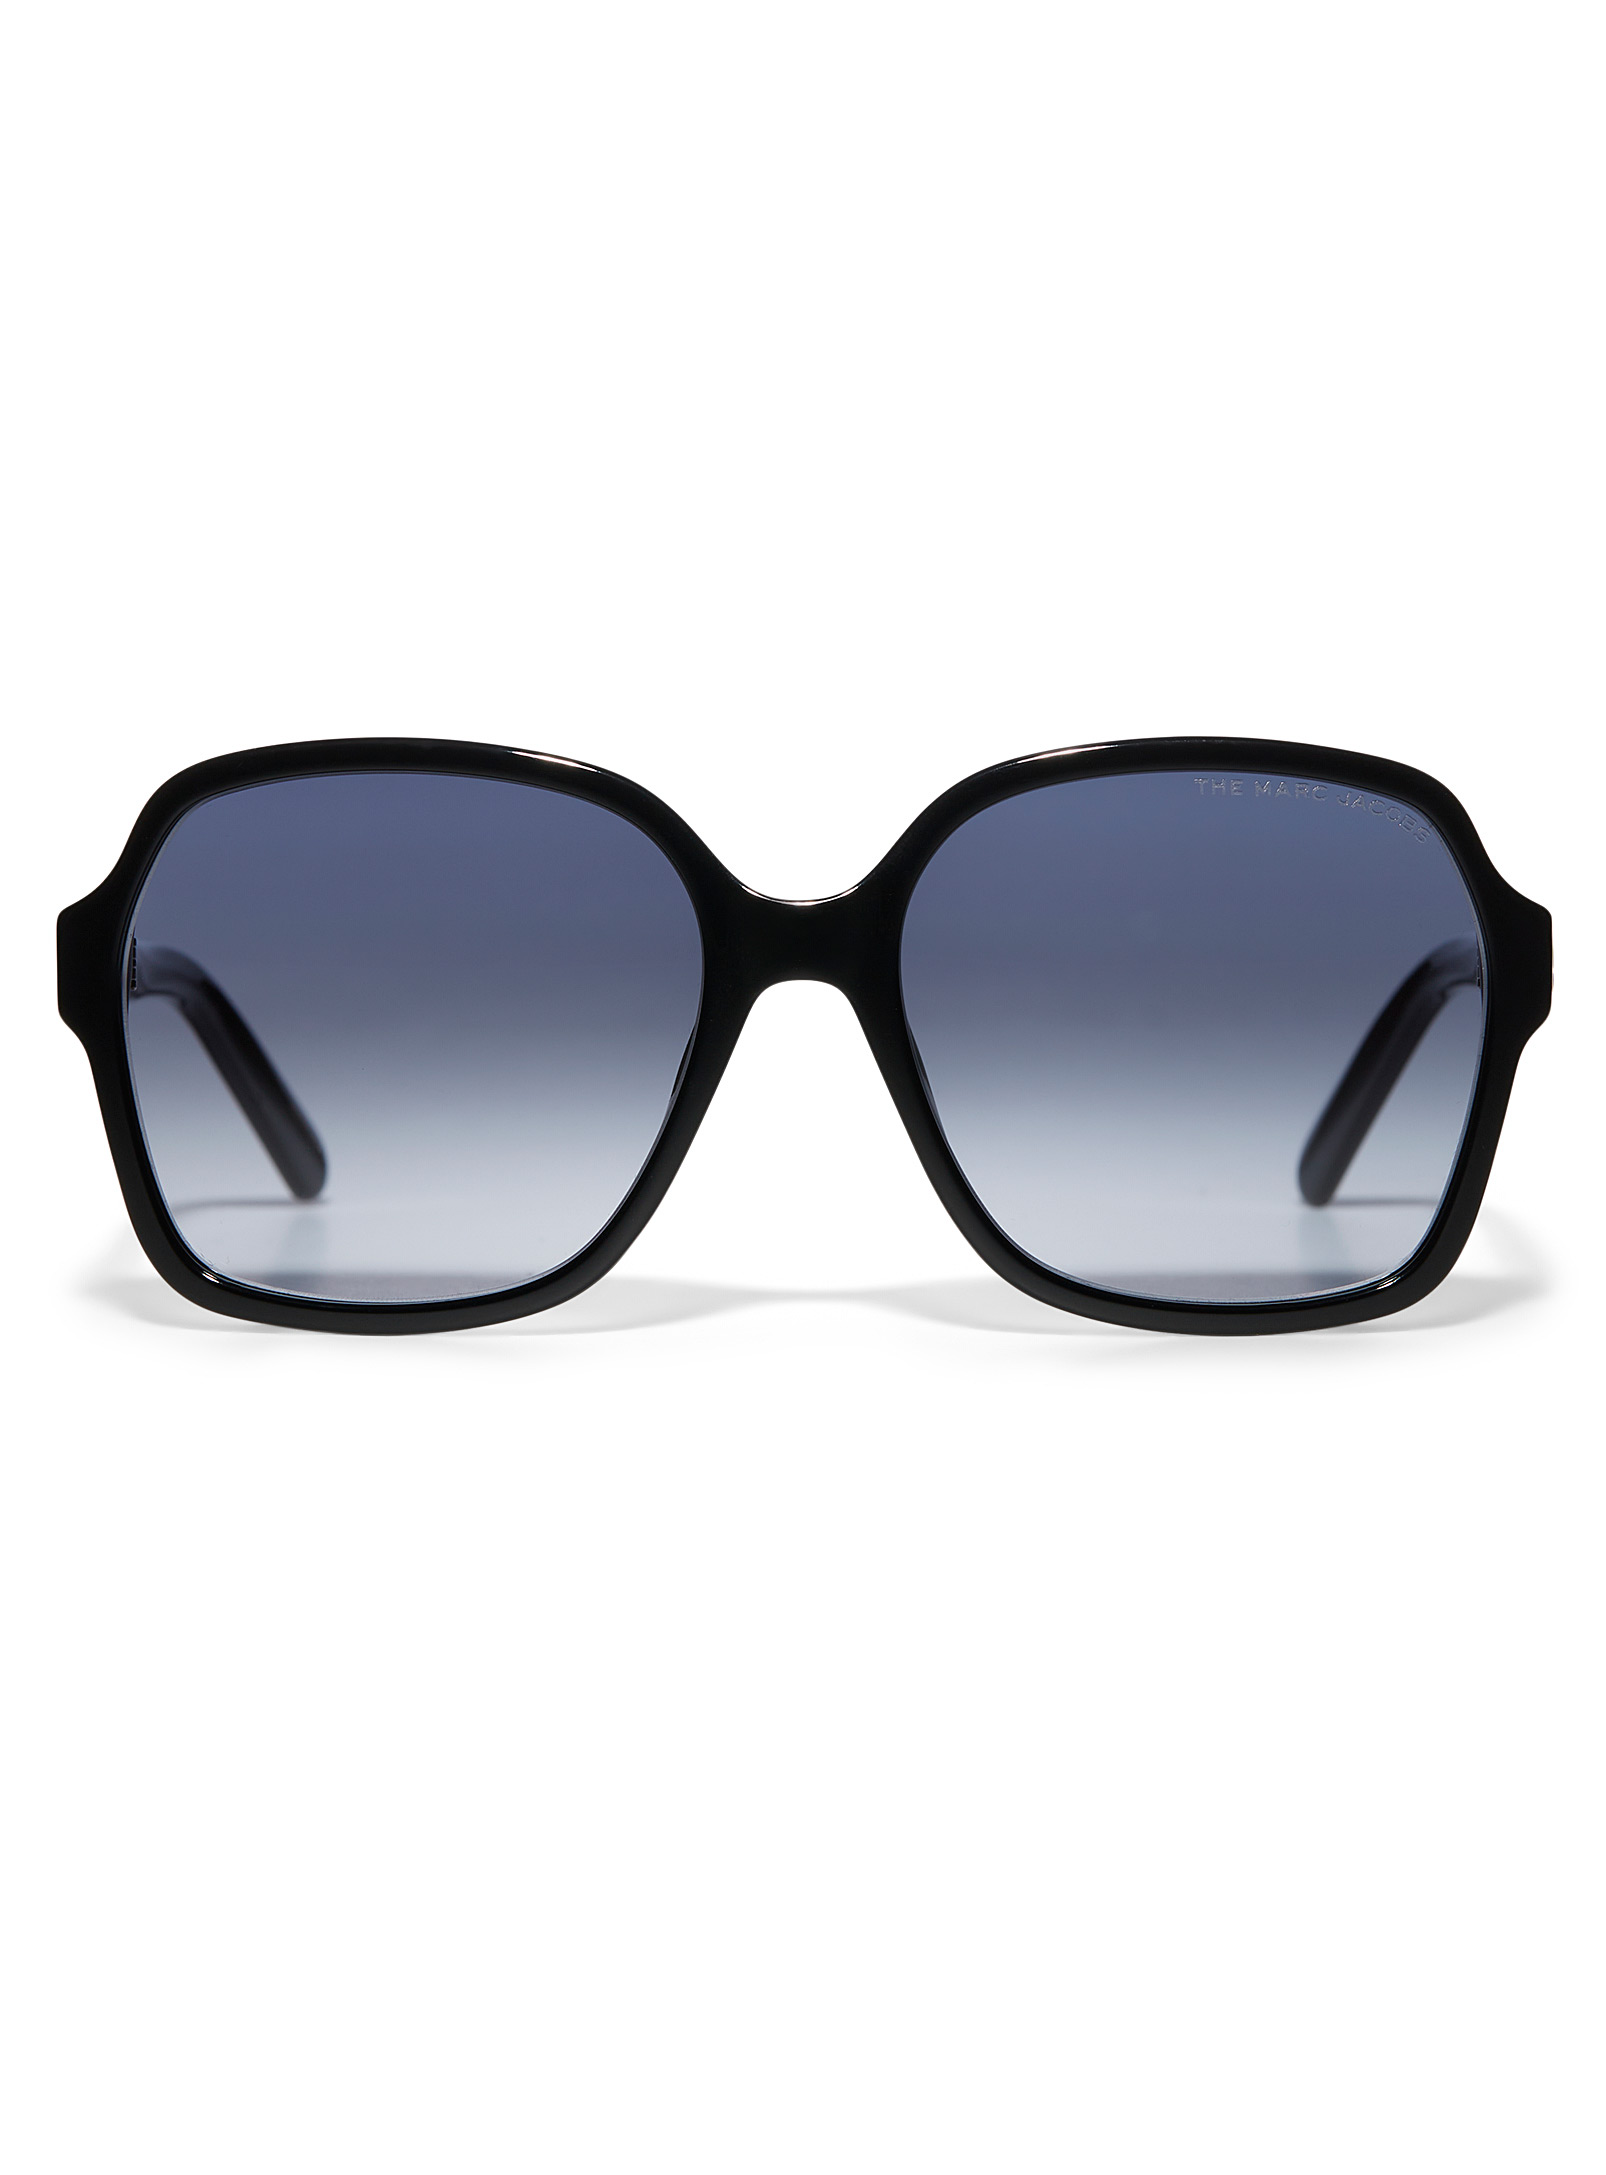 Marc Jacobs - Les lunettes de soleil carrées accents dorés